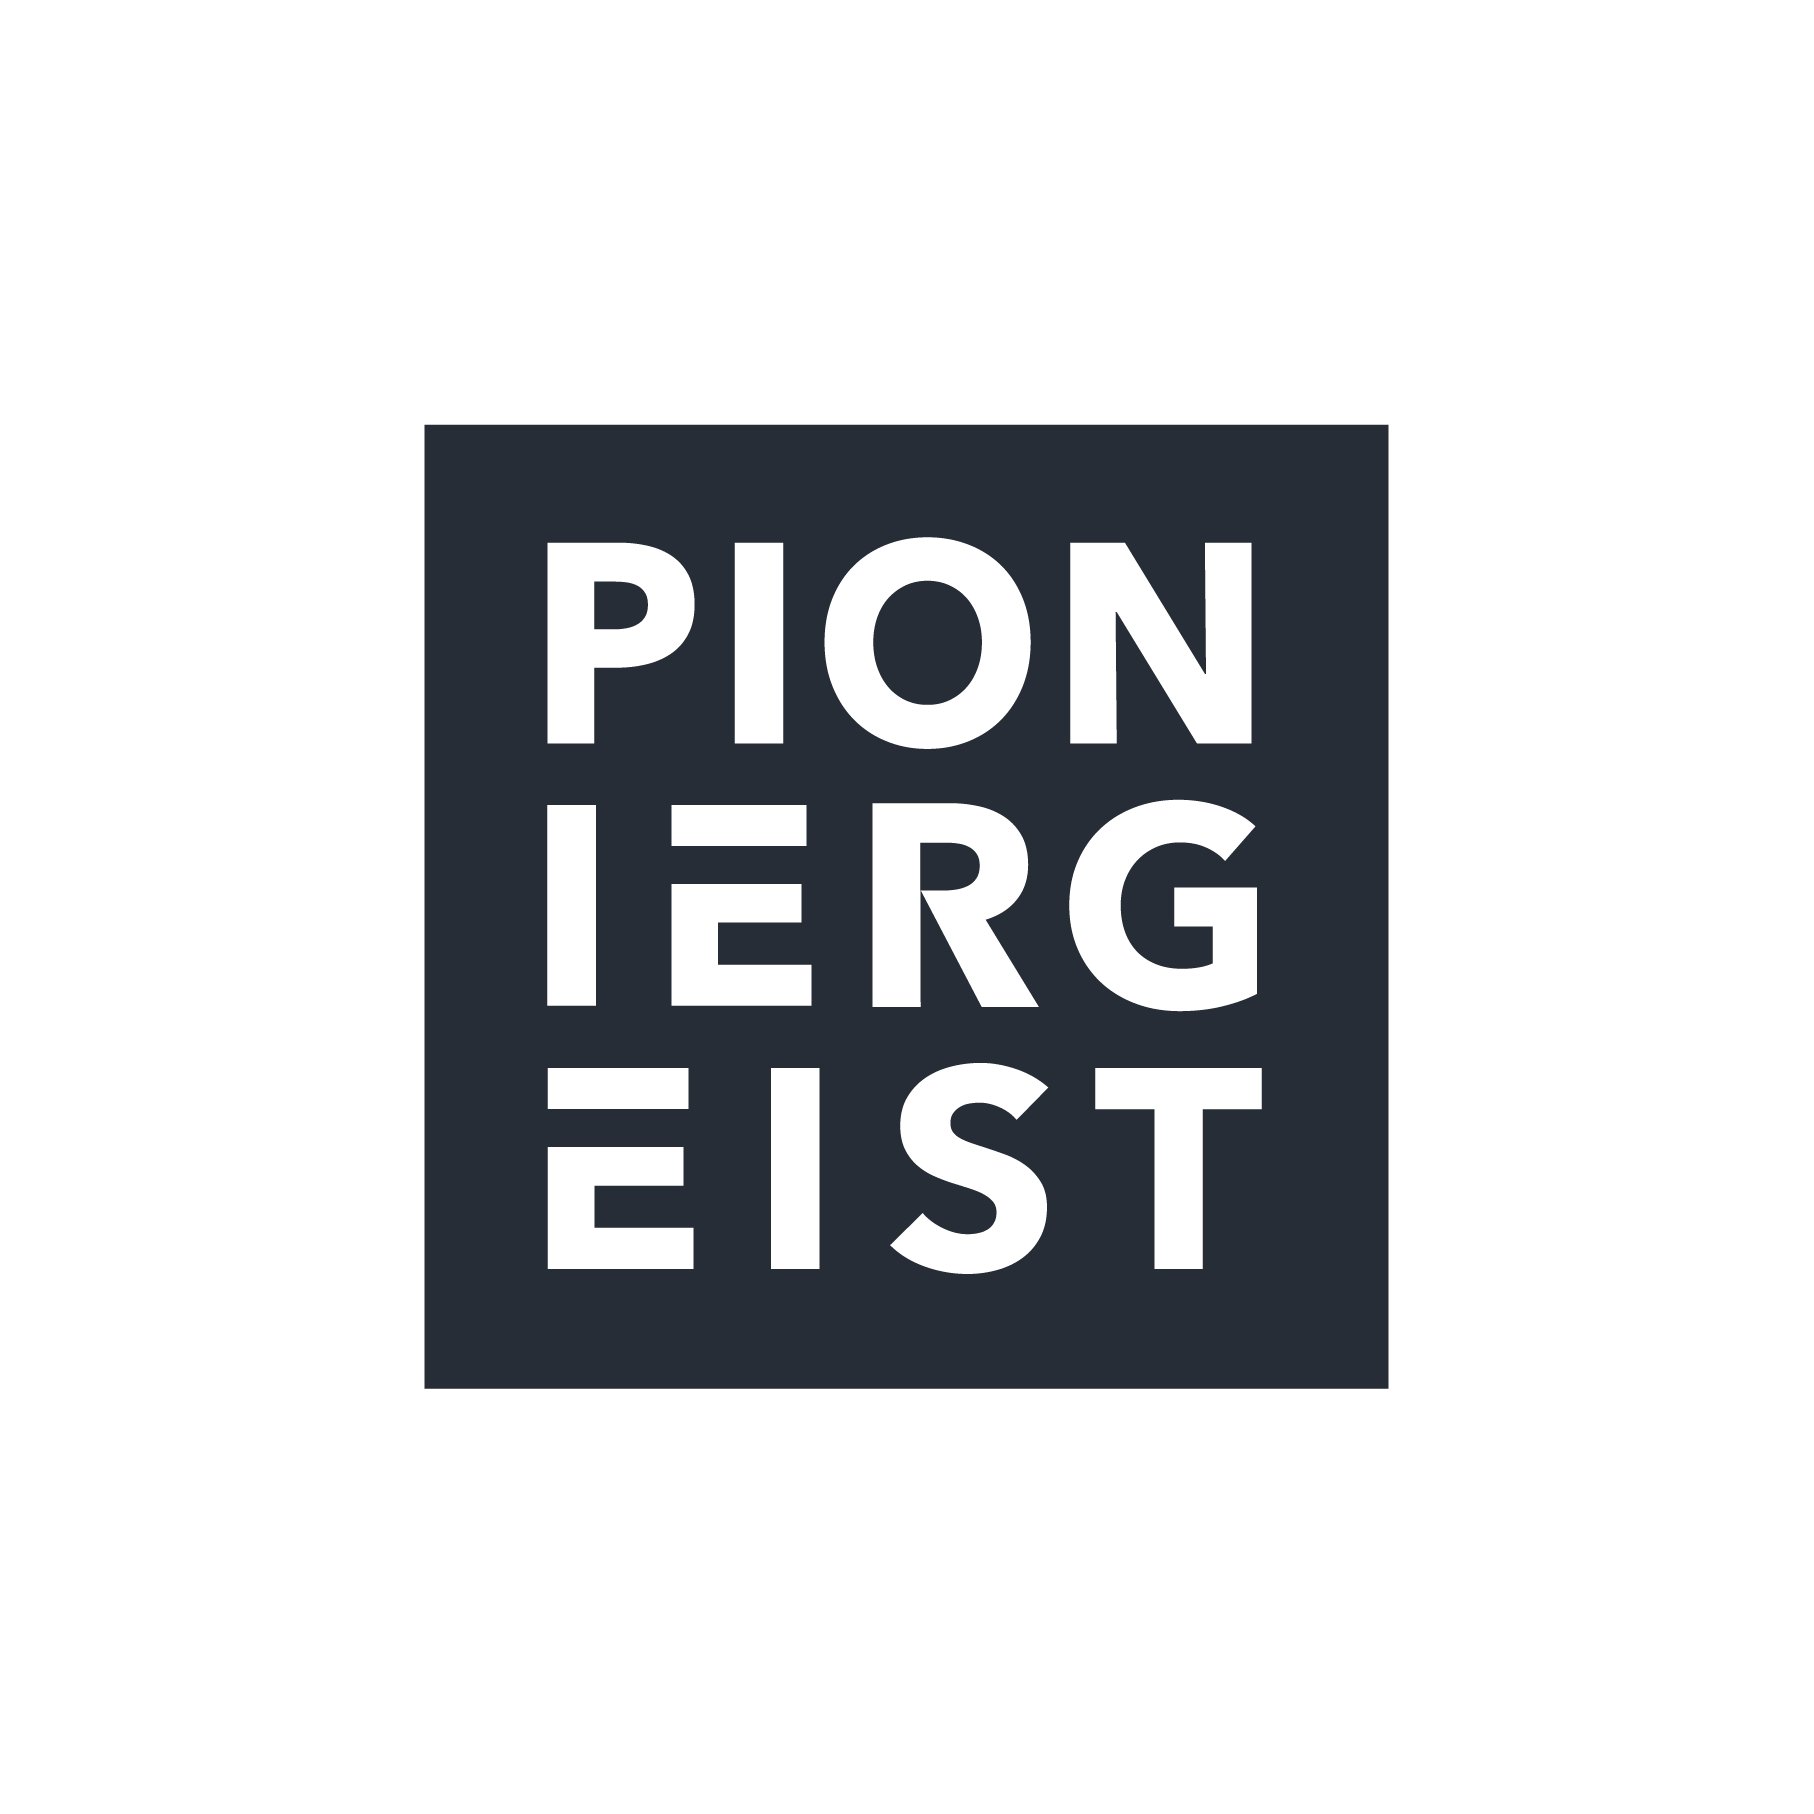 Pioniergeist